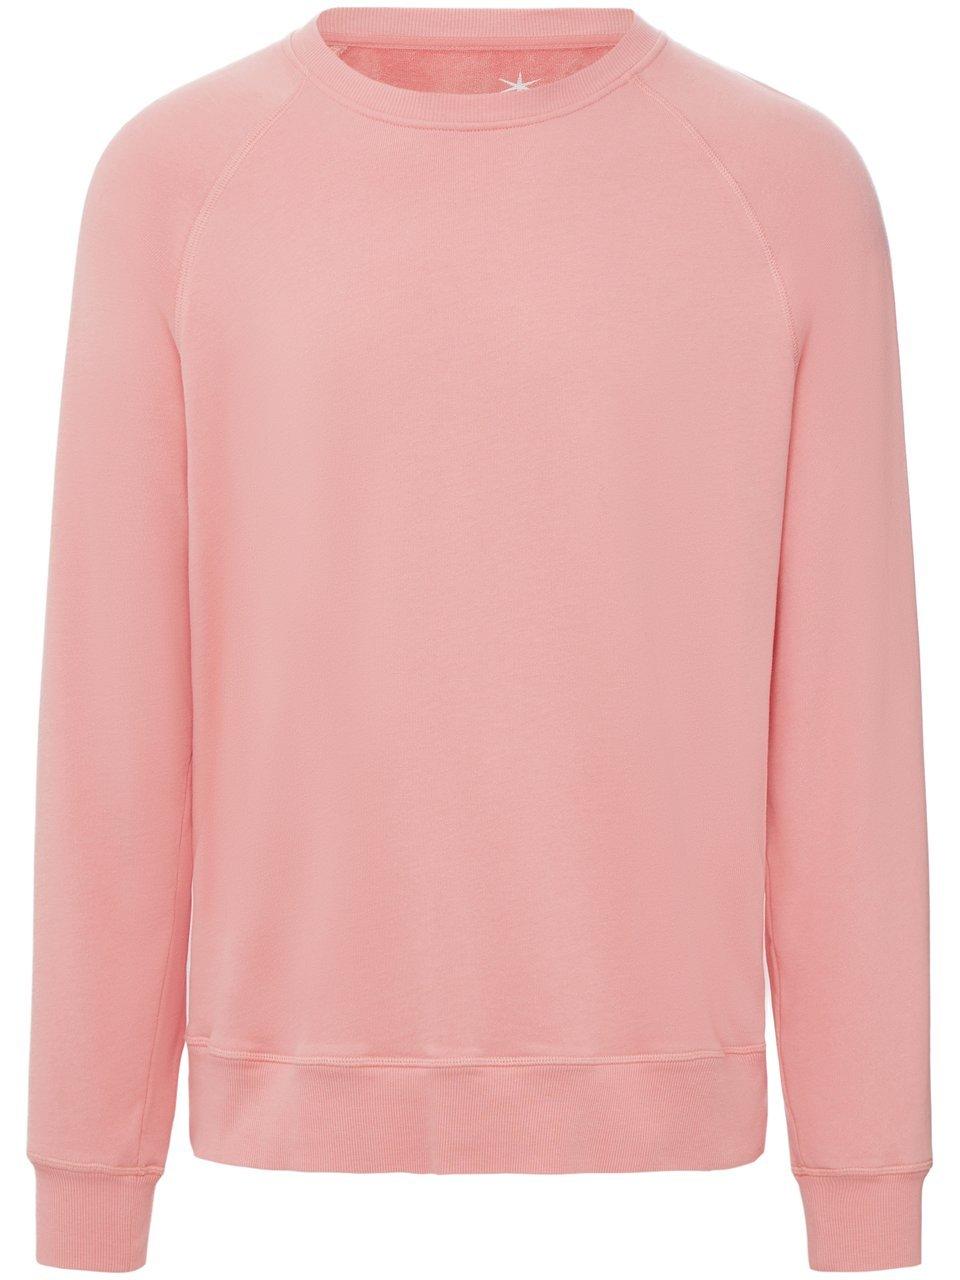 Le sweatshirt 100% coton  Juvia rosé